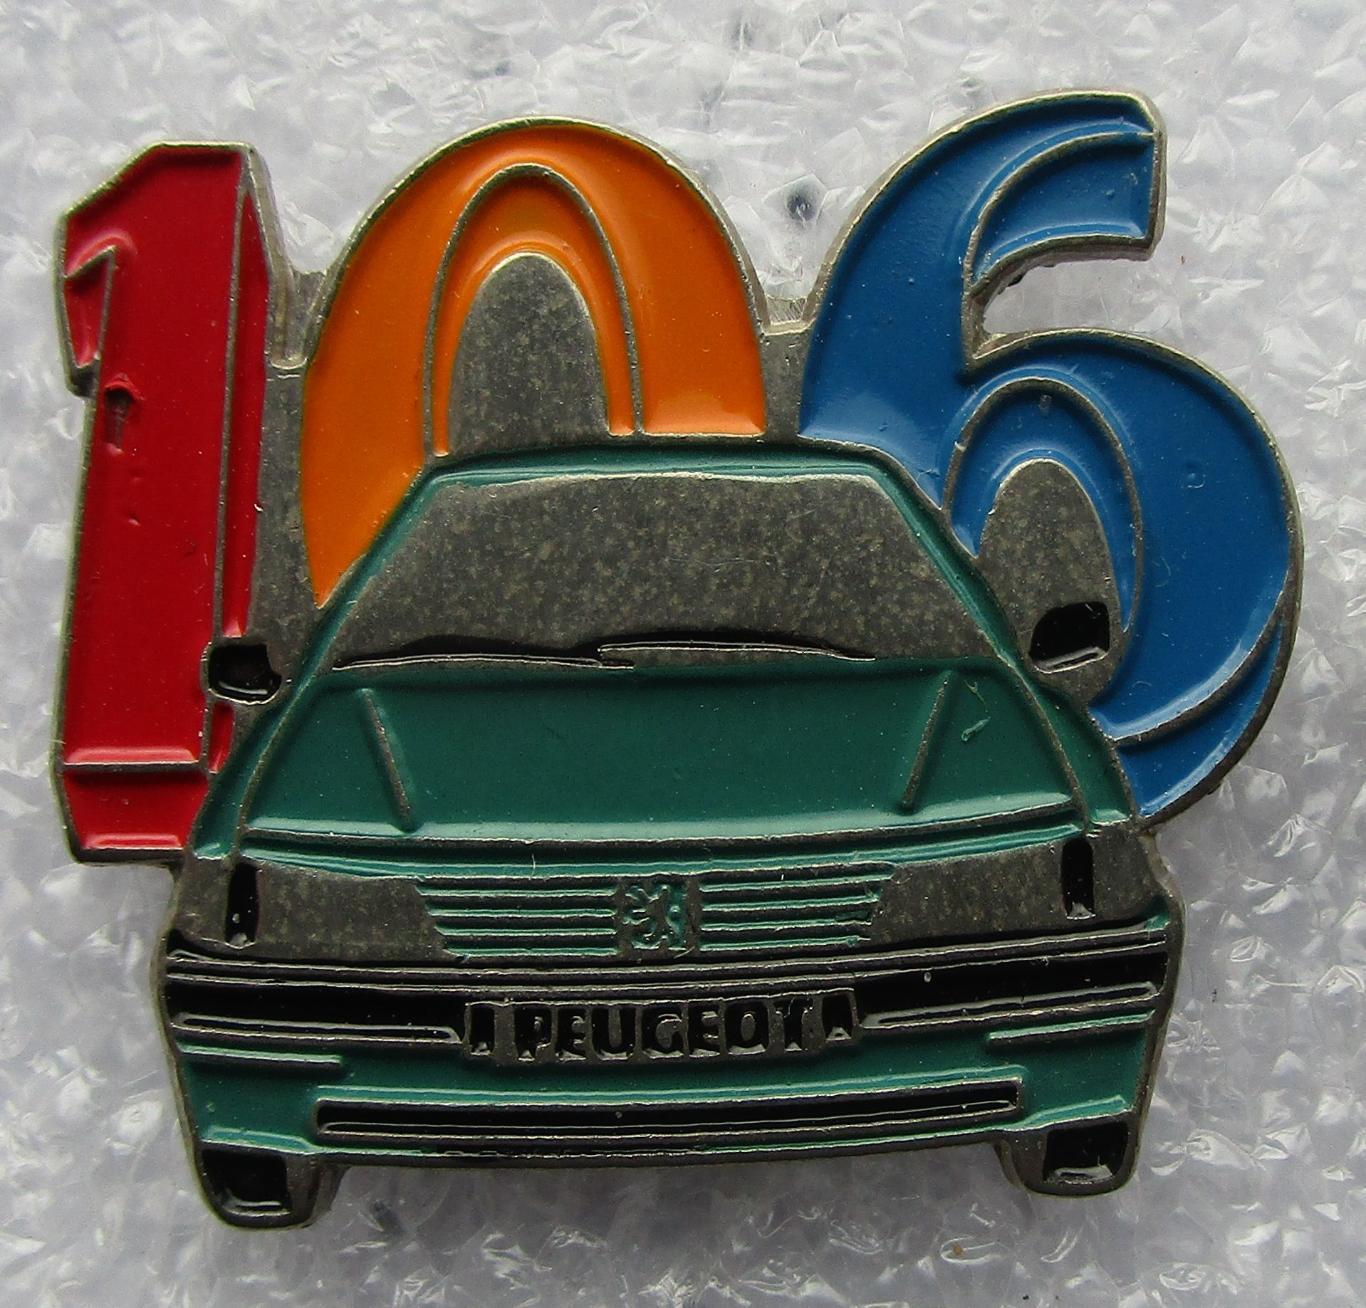 Значки Франция. Автомобили - Пежо 106 ( Peugeot 106 ) 1